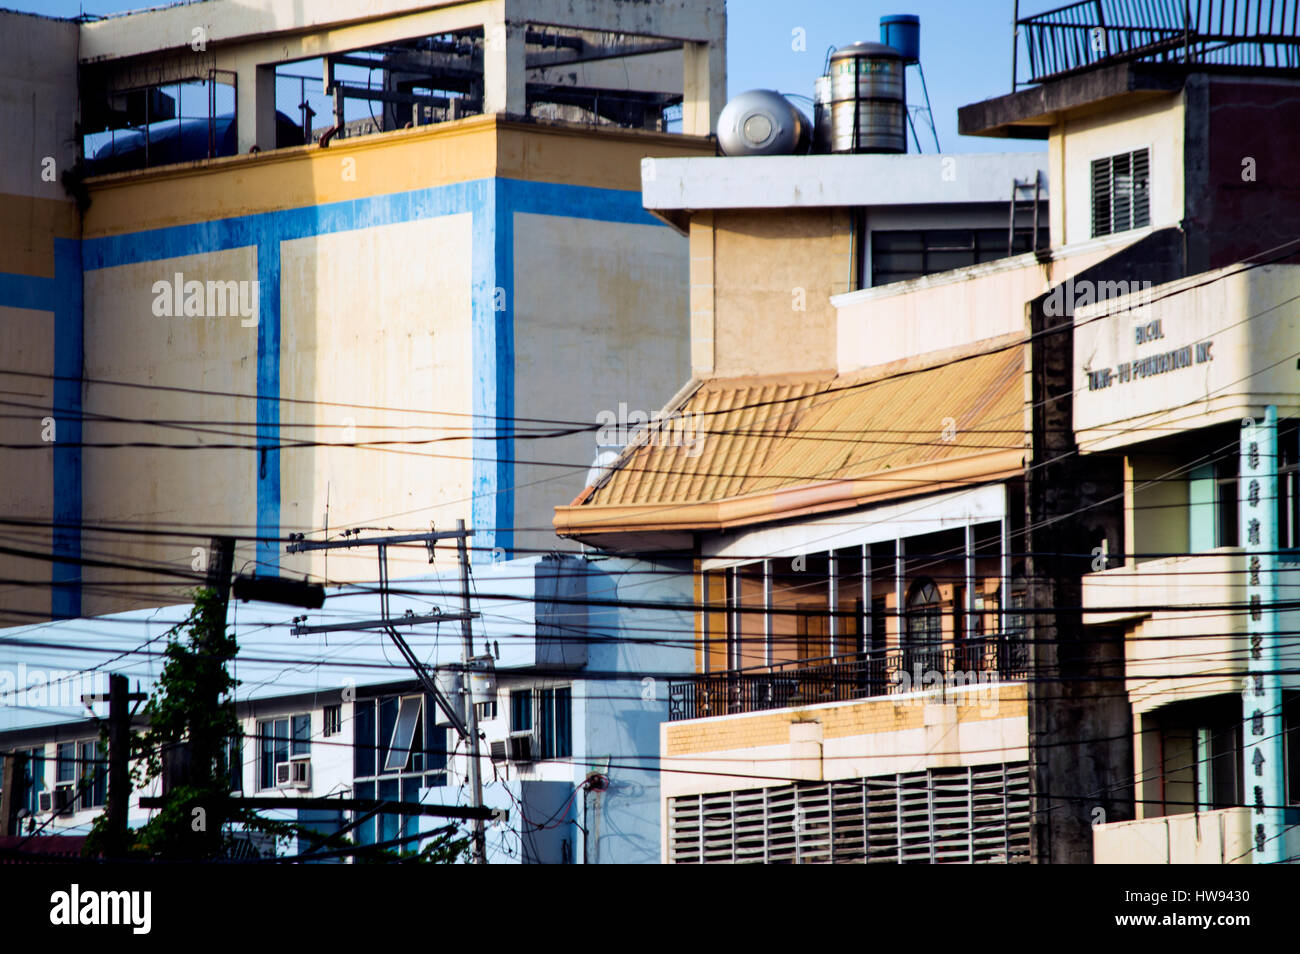 Buildings along Quezon Avenue, Legazpi City, Philippines Stock Photo